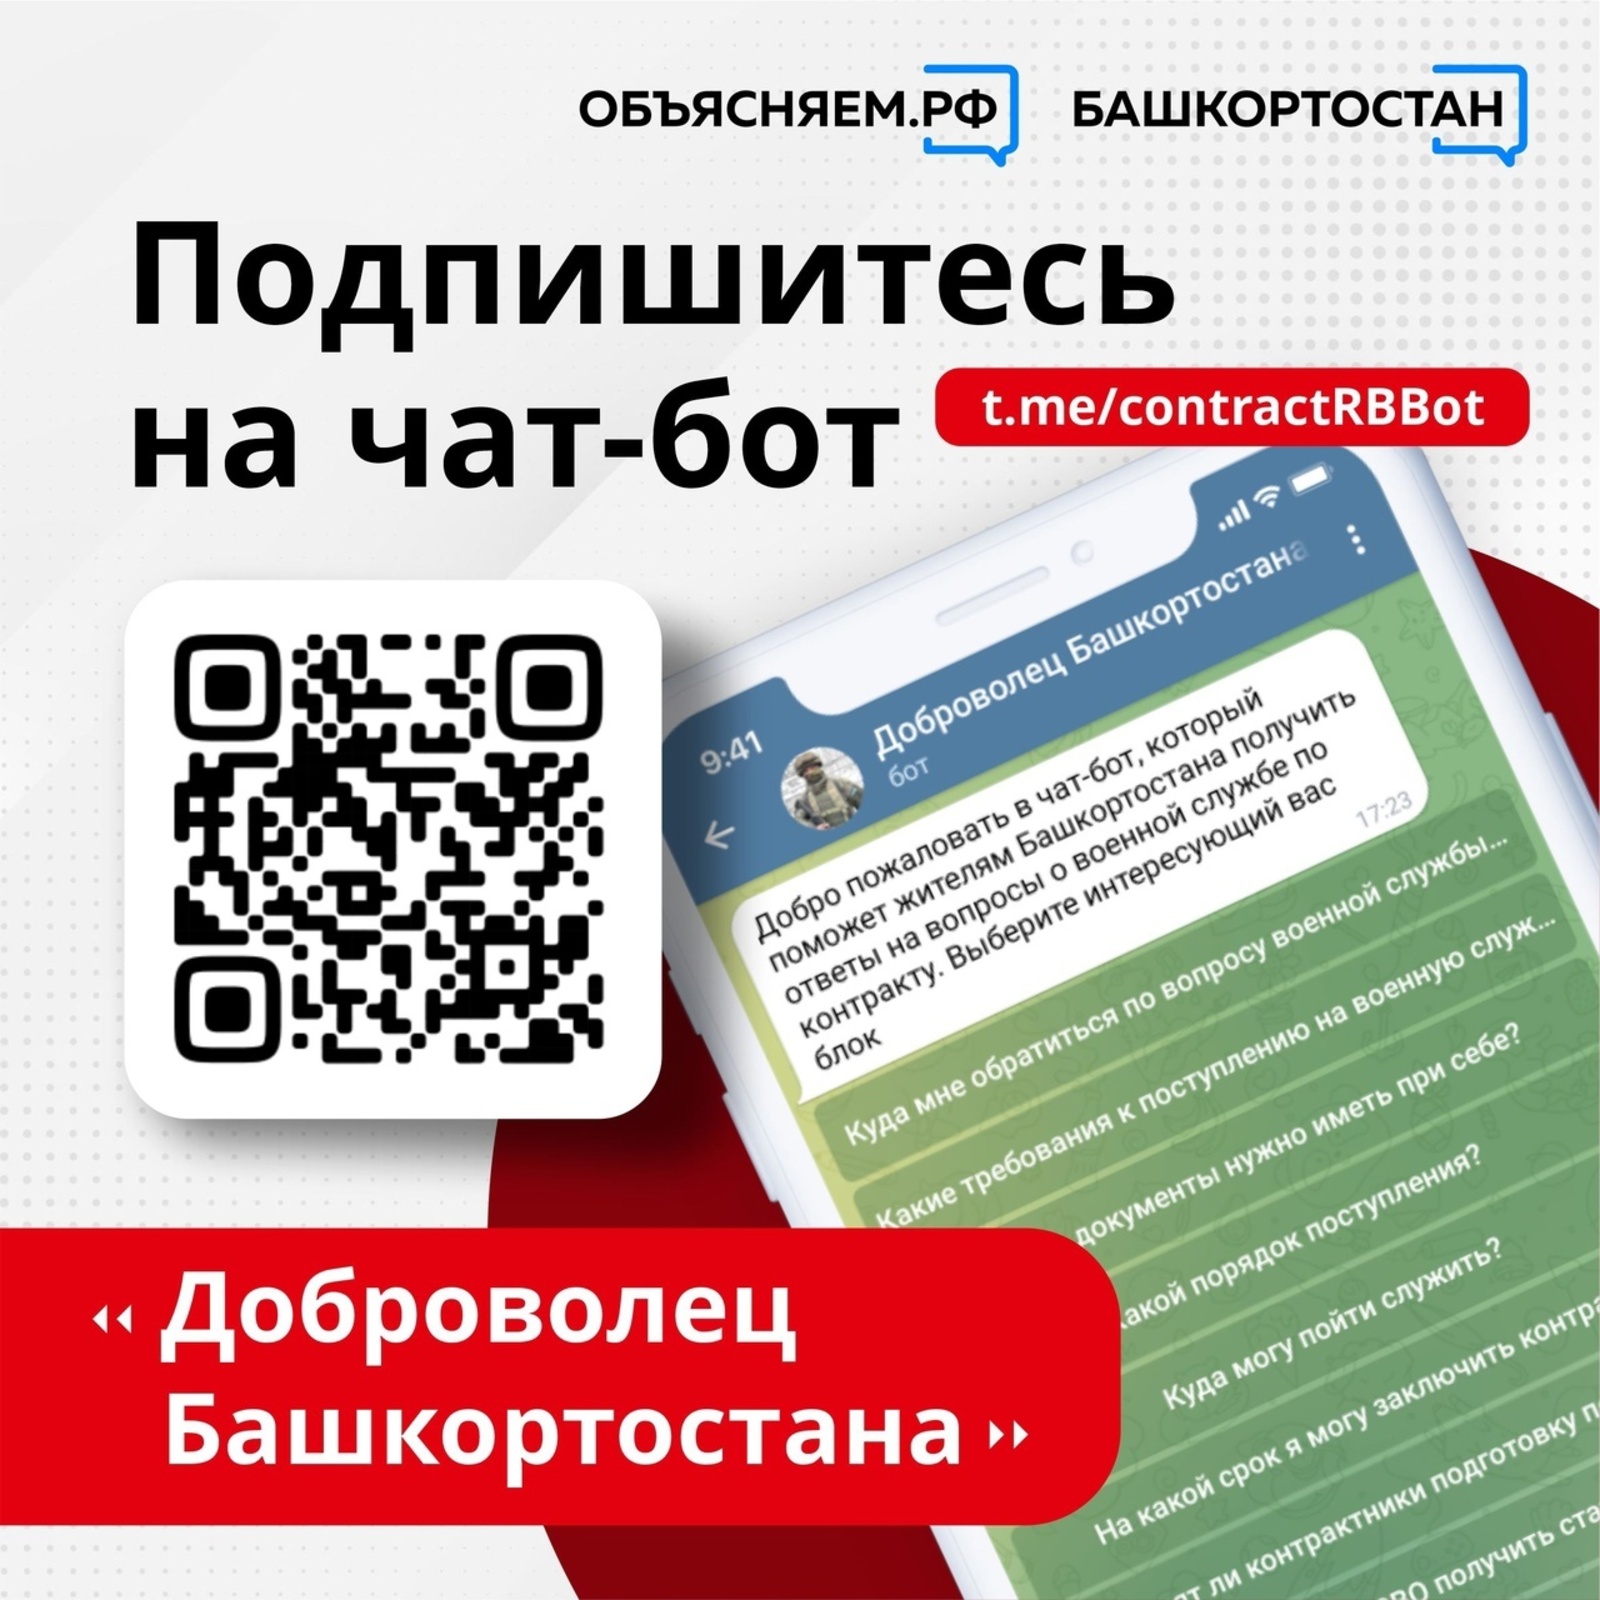 В Башкортостане запустили чат-бот, в котором можно найти ответы на главные вопросы про военную службу по контракту